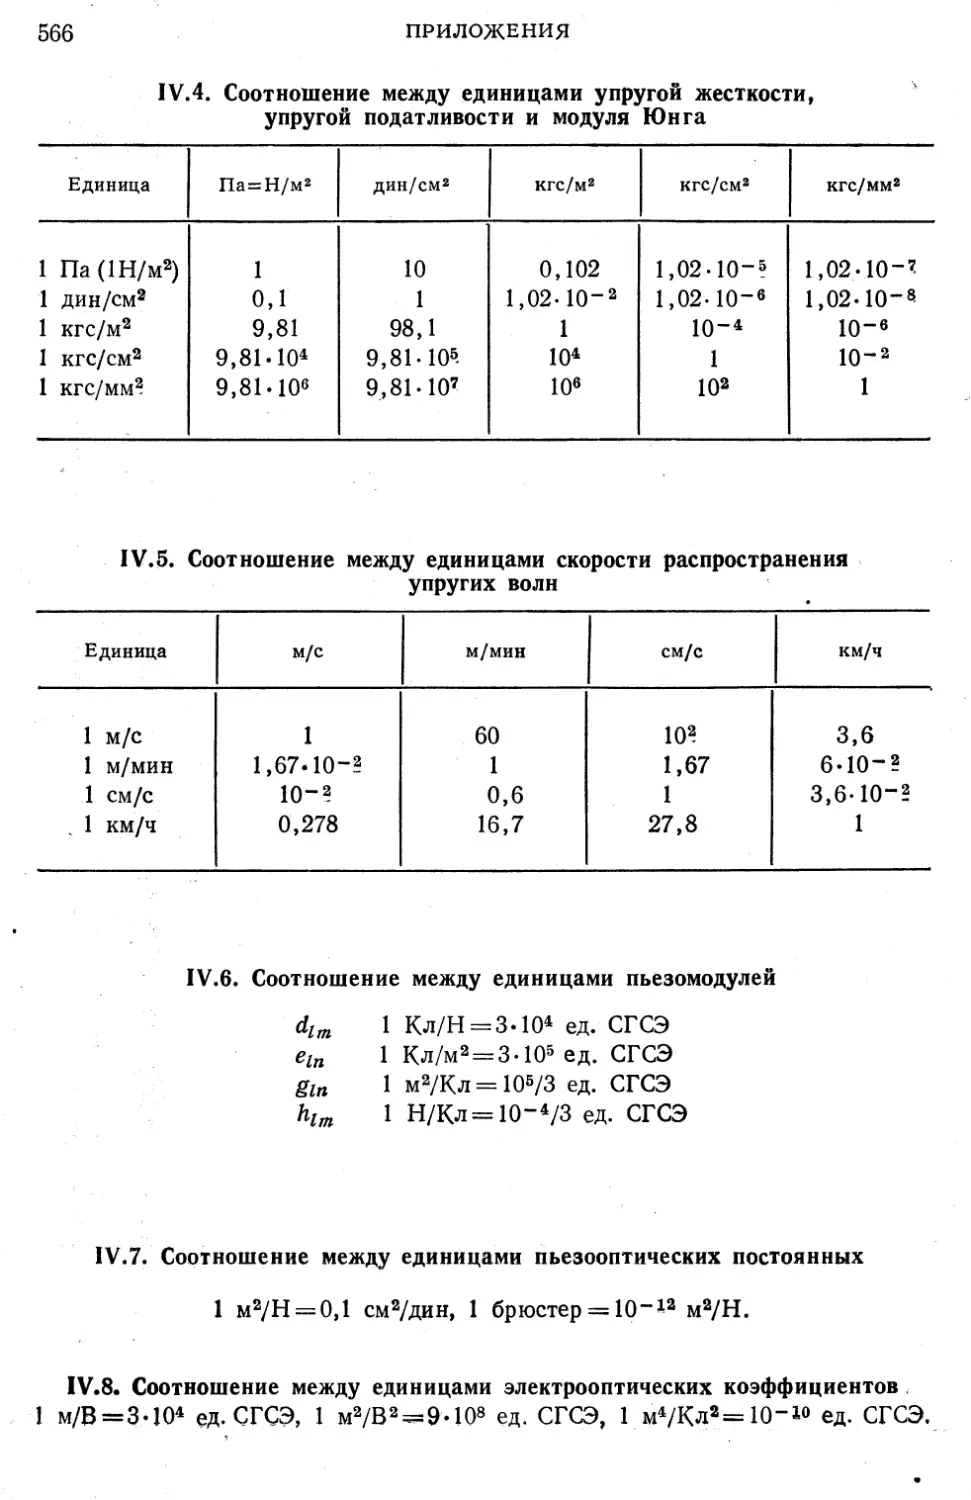 IV.4. Соотношение между единицами упругой жесткости, упругой податливости и модуля Юнга
IV.5. Соотношение между единицами скорости распространения упругих волн
IV.6. Соотношение между единицами пьезомодулей
IV.7. Соотношение между единицами пьезооптических постоянных
IV.8. Соотношение между единицами электрооптических коэффициентов